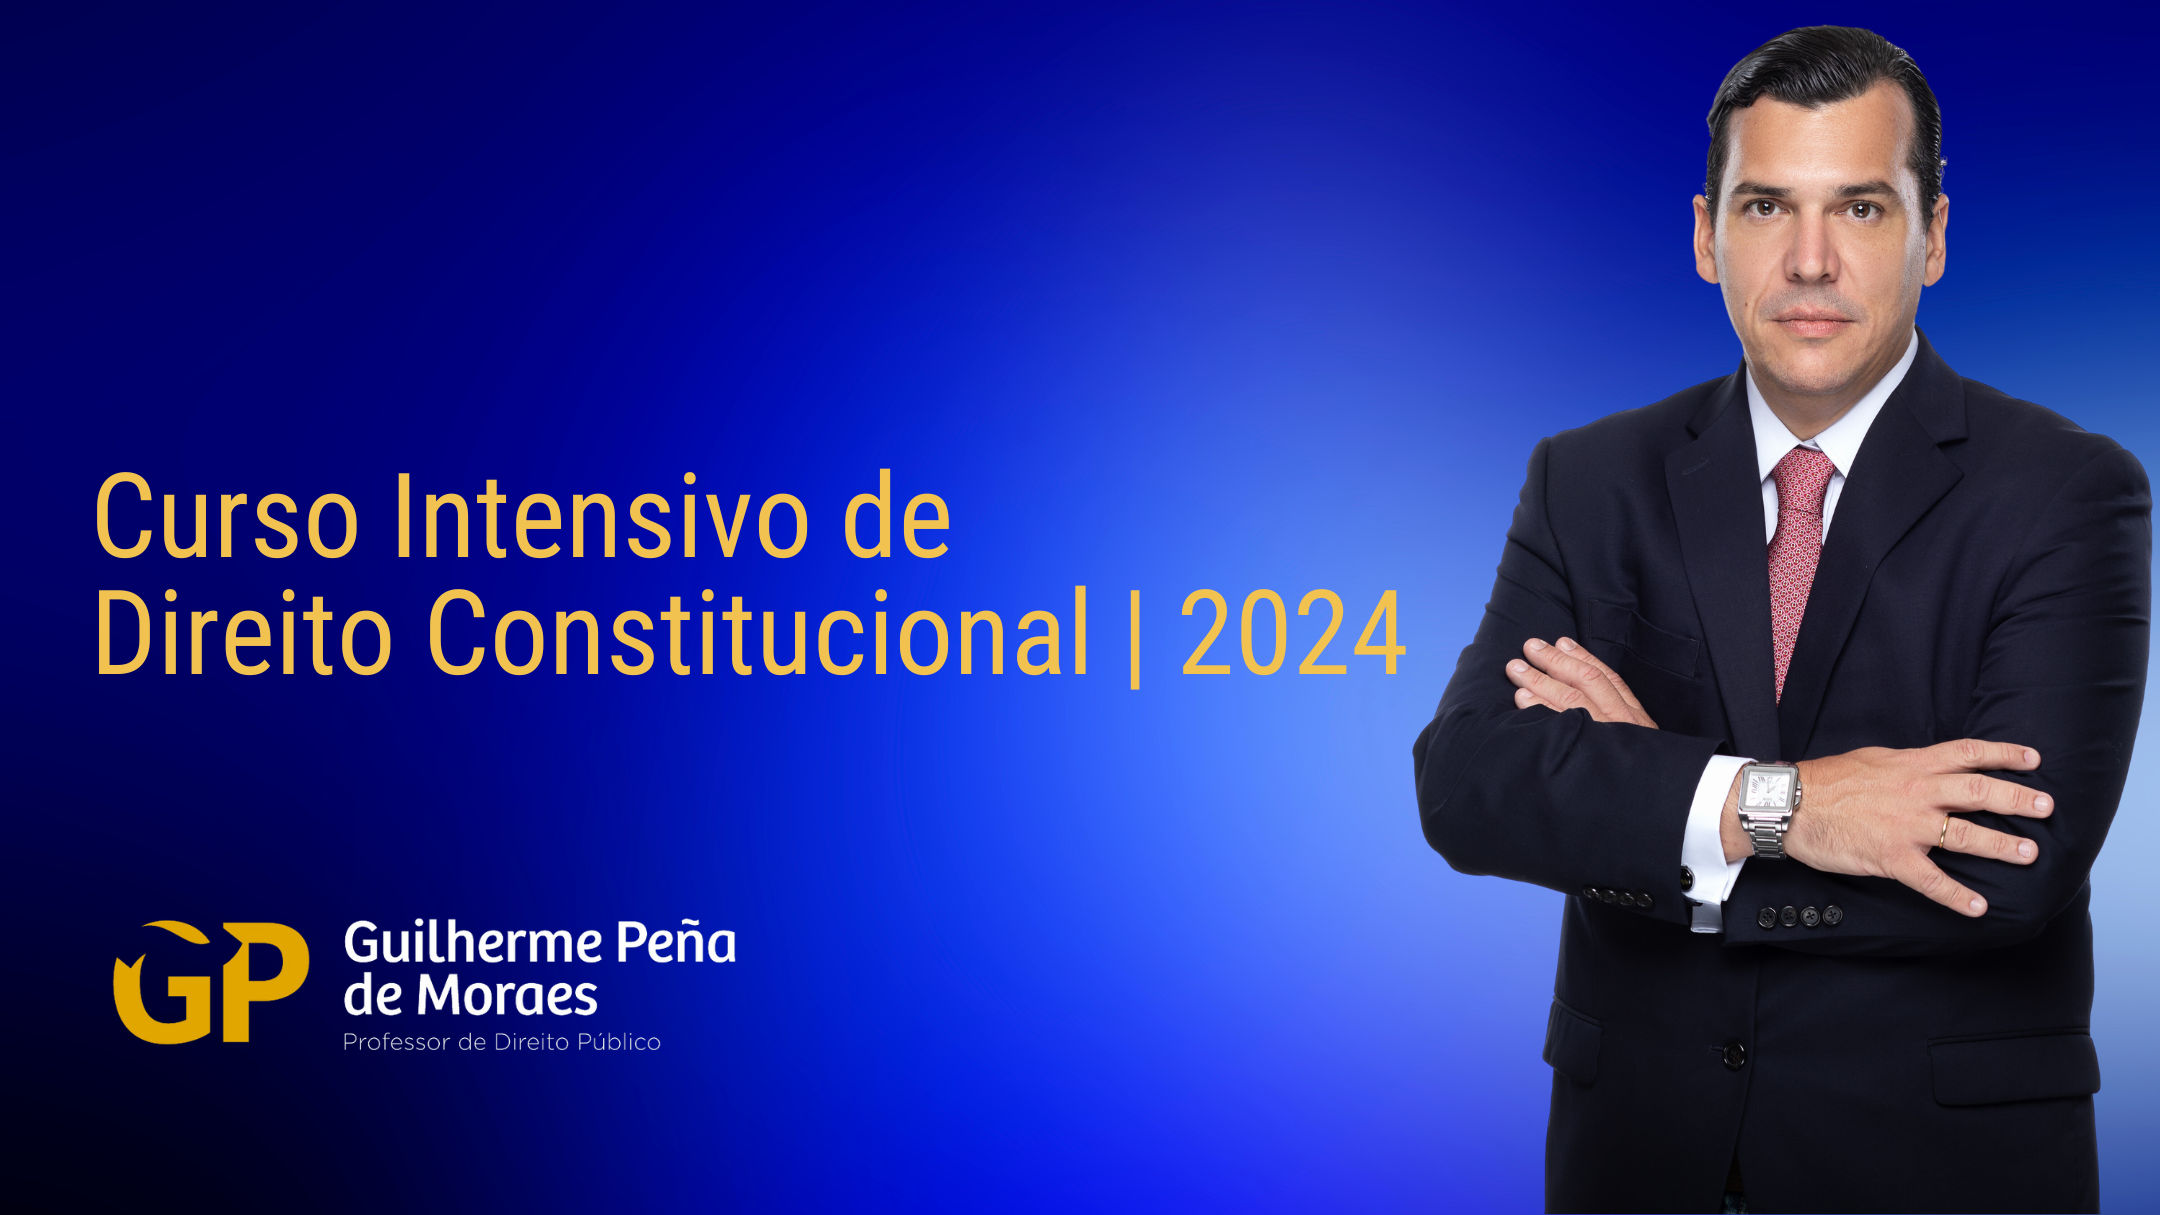 Curso Intensivo de Direito Constitucional | 2024